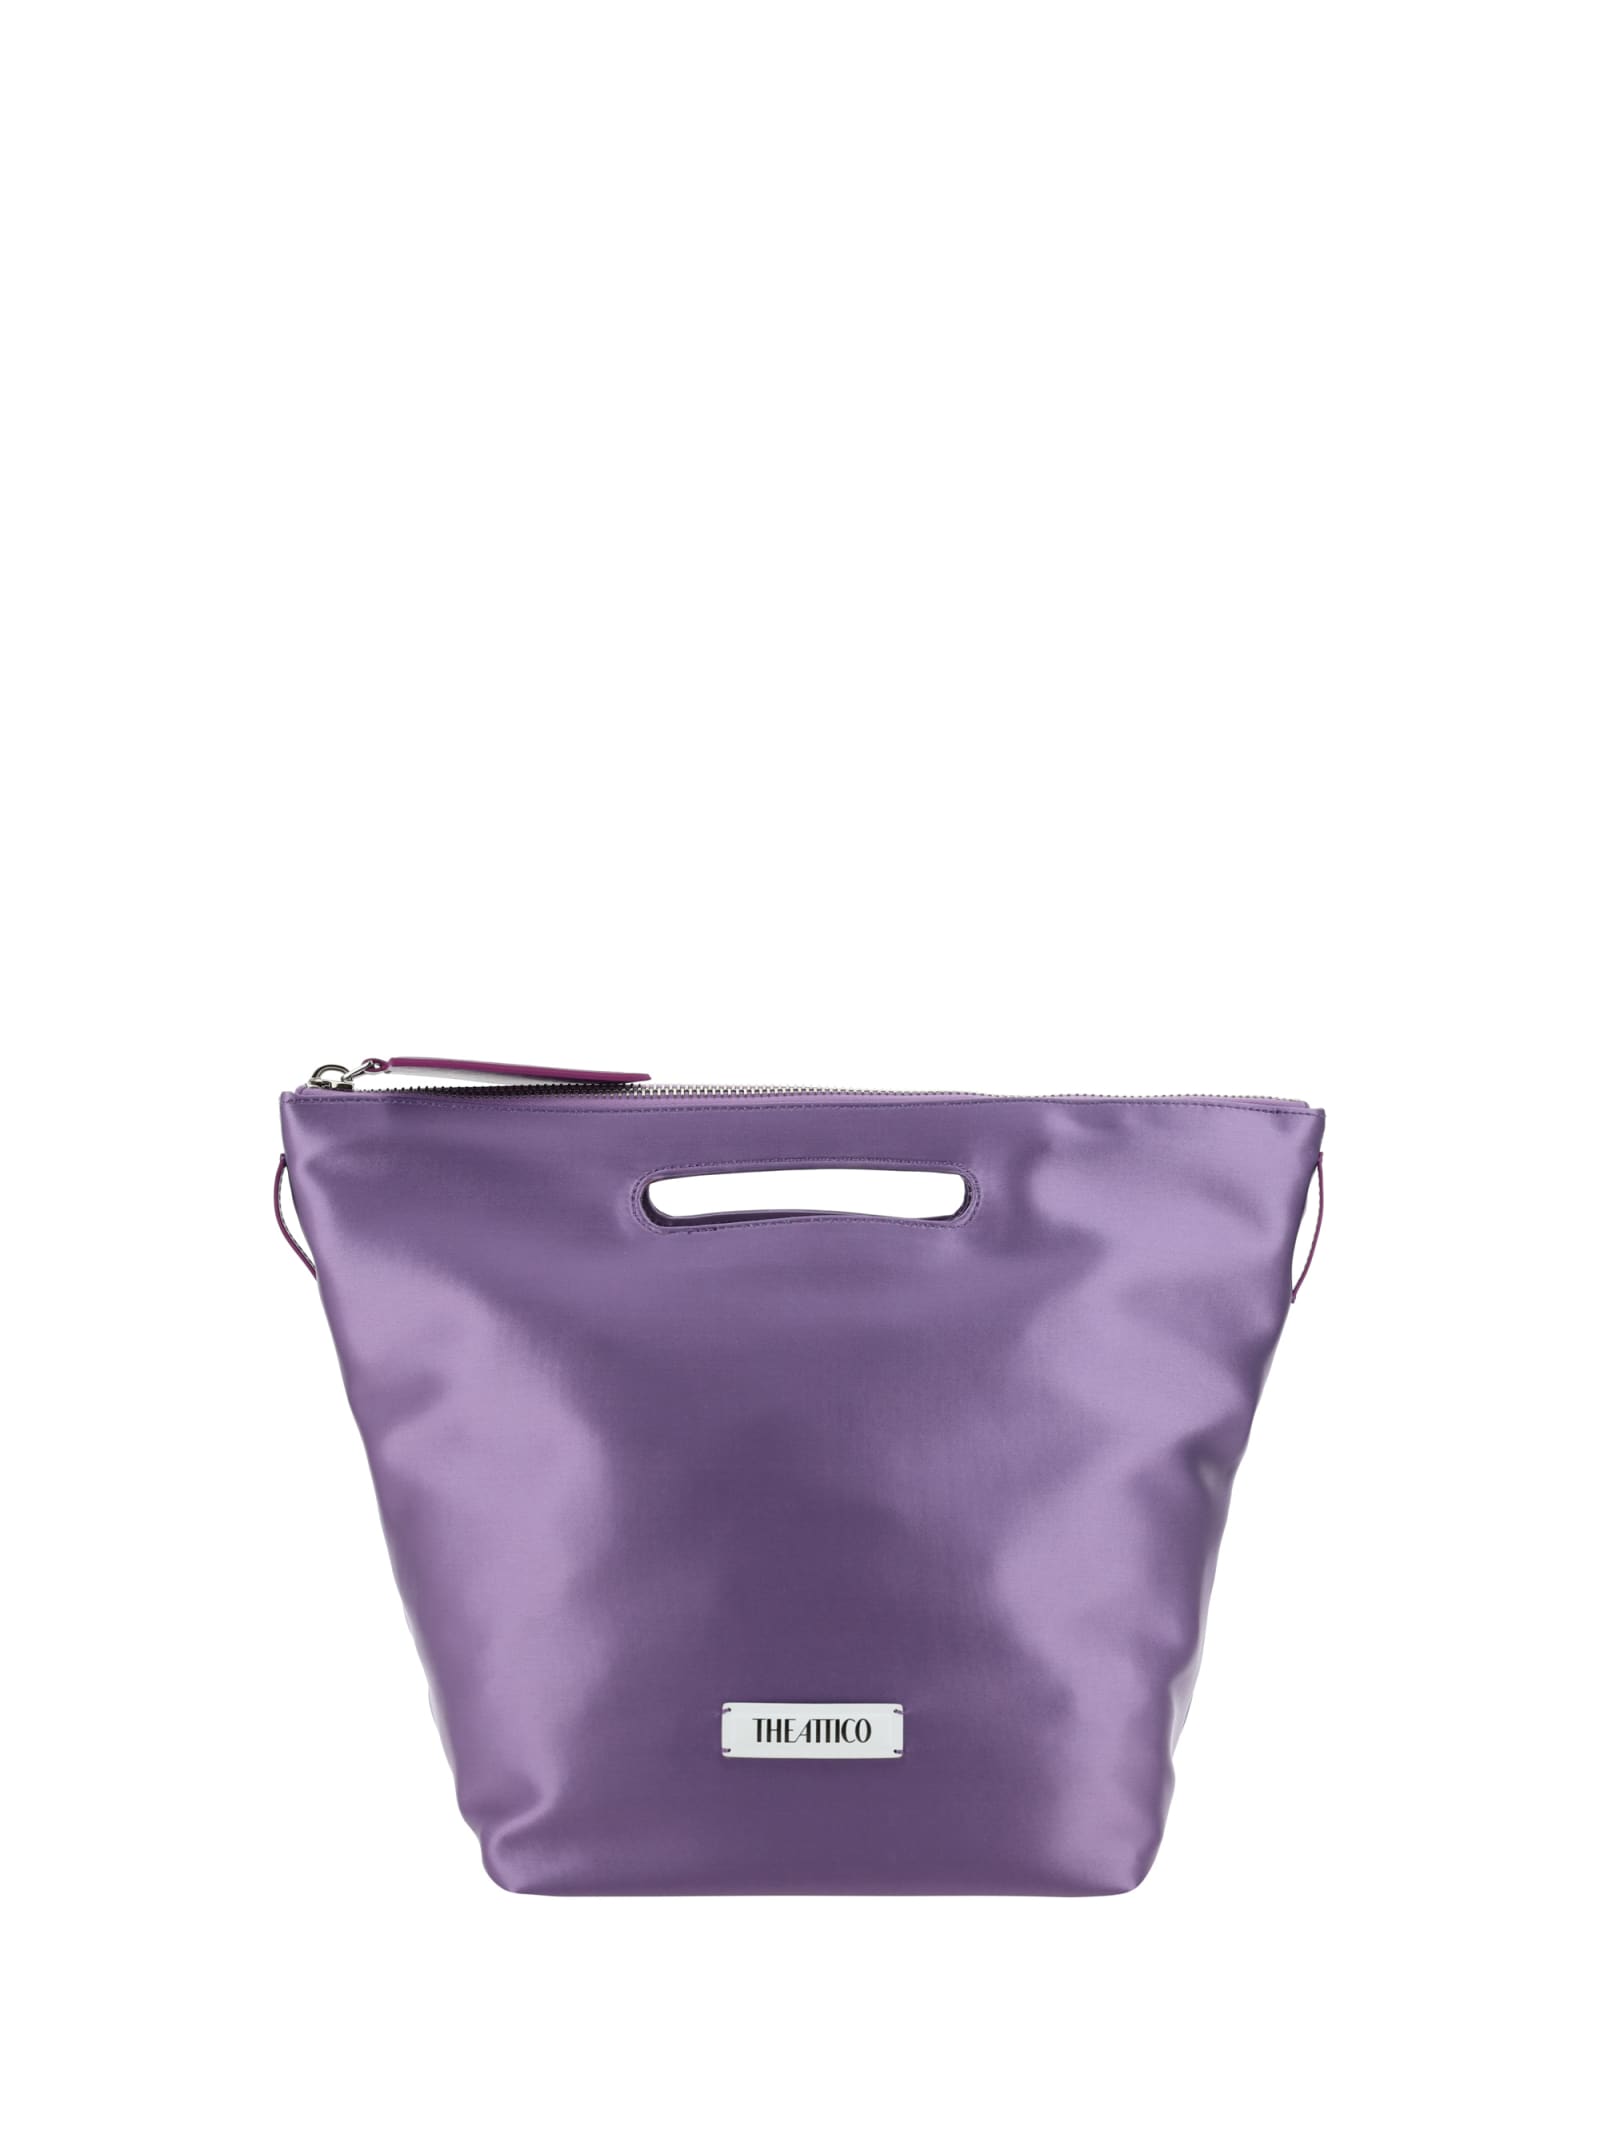 Attico Via Dei Giardini 30 Handbag In Purple